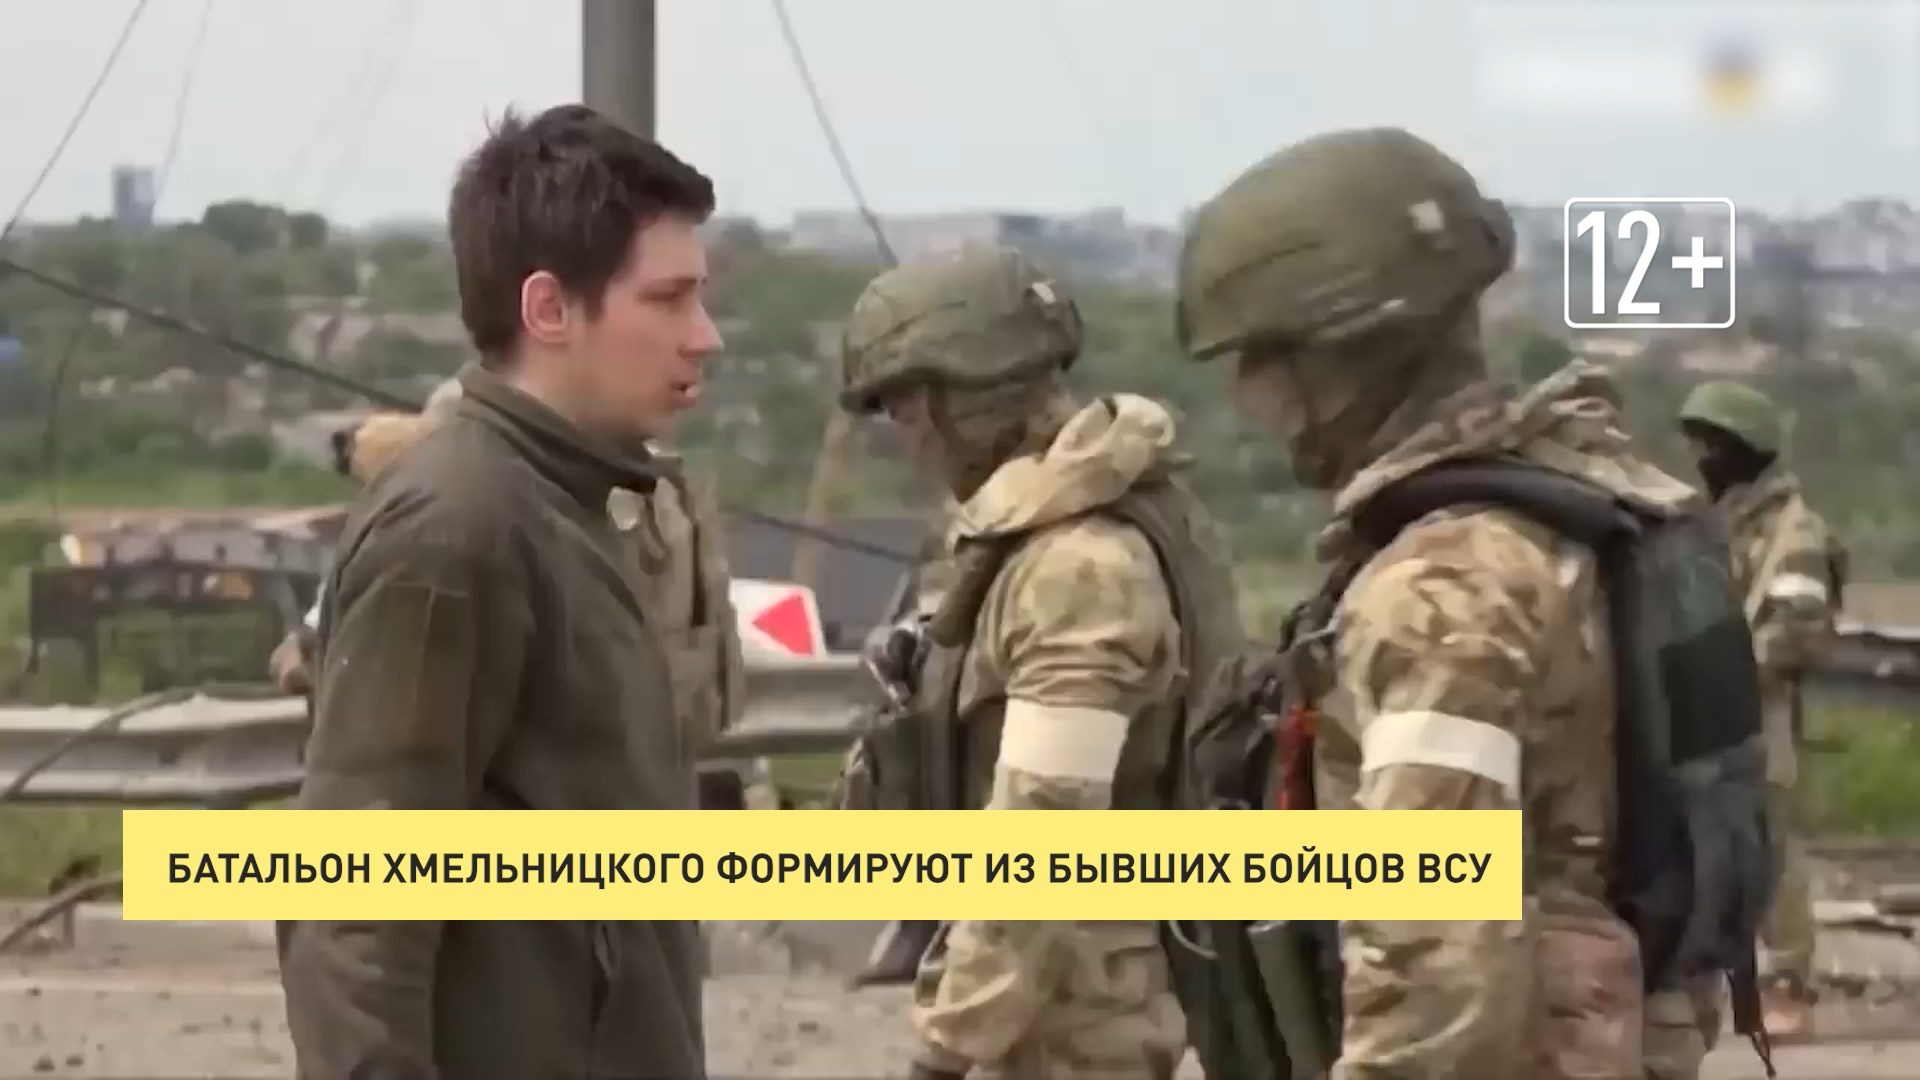 ДОН24 - Батальон Хмельницкого набирают из бывших бойцов ВСУ